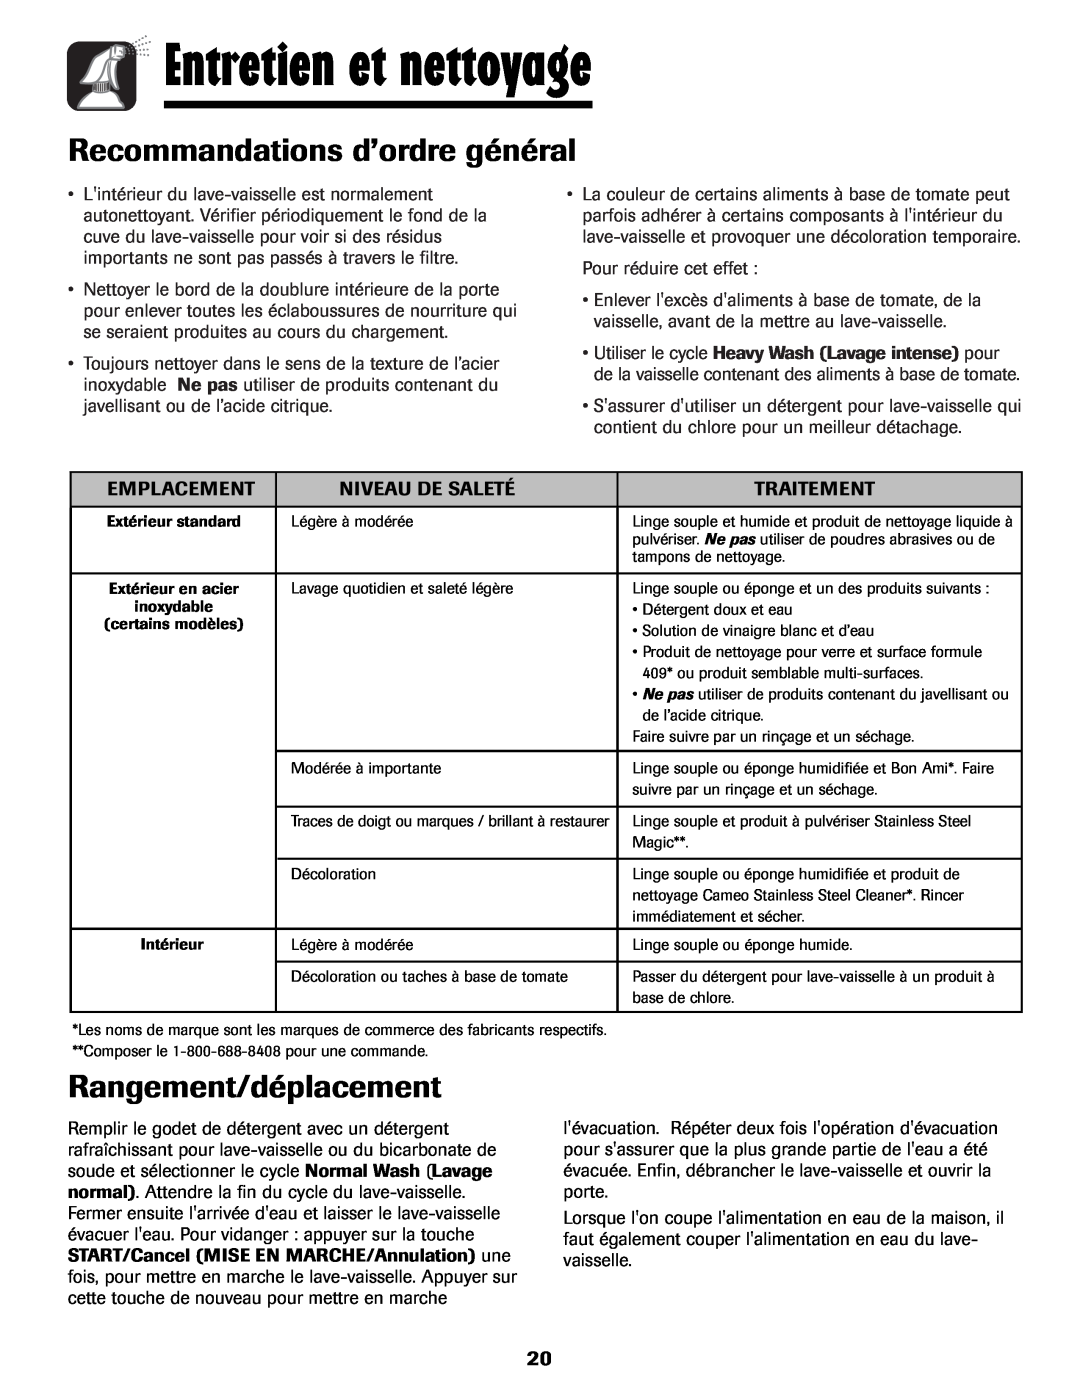 Maytag MDB-7 warranty Entretien et nettoyage, Recommandations d’ordre général, Rangement/déplacement 